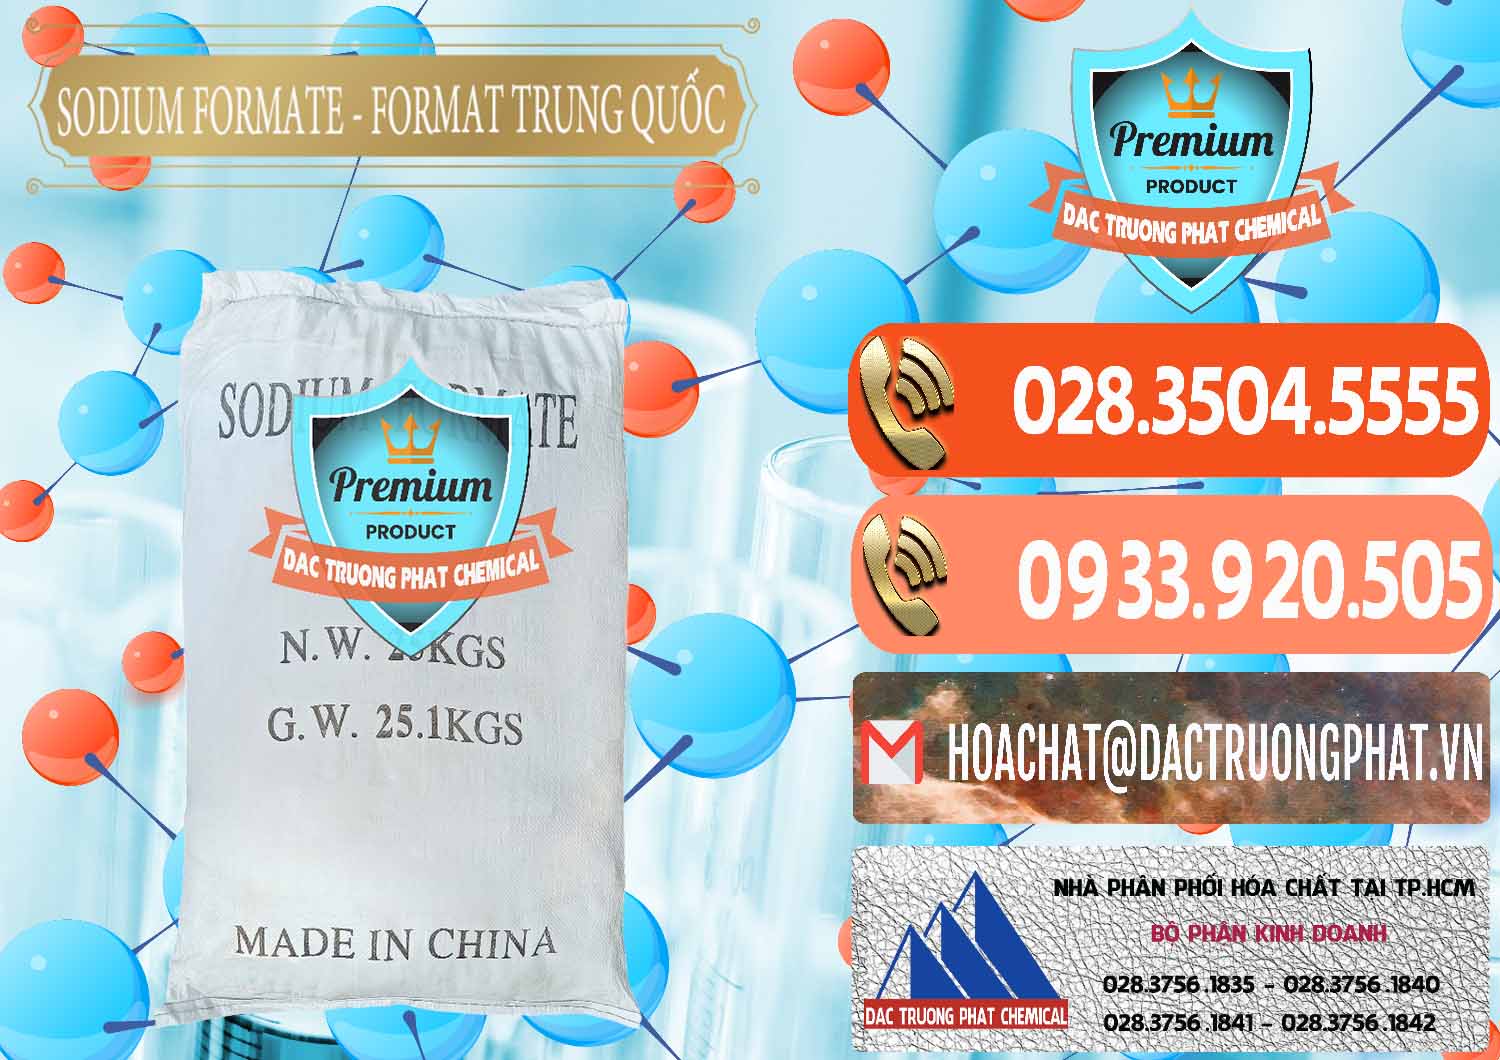 Công ty bán & cung cấp Sodium Formate - Natri Format Trung Quốc China - 0142 - Cty nhập khẩu & cung cấp hóa chất tại TP.HCM - hoachatmientay.com